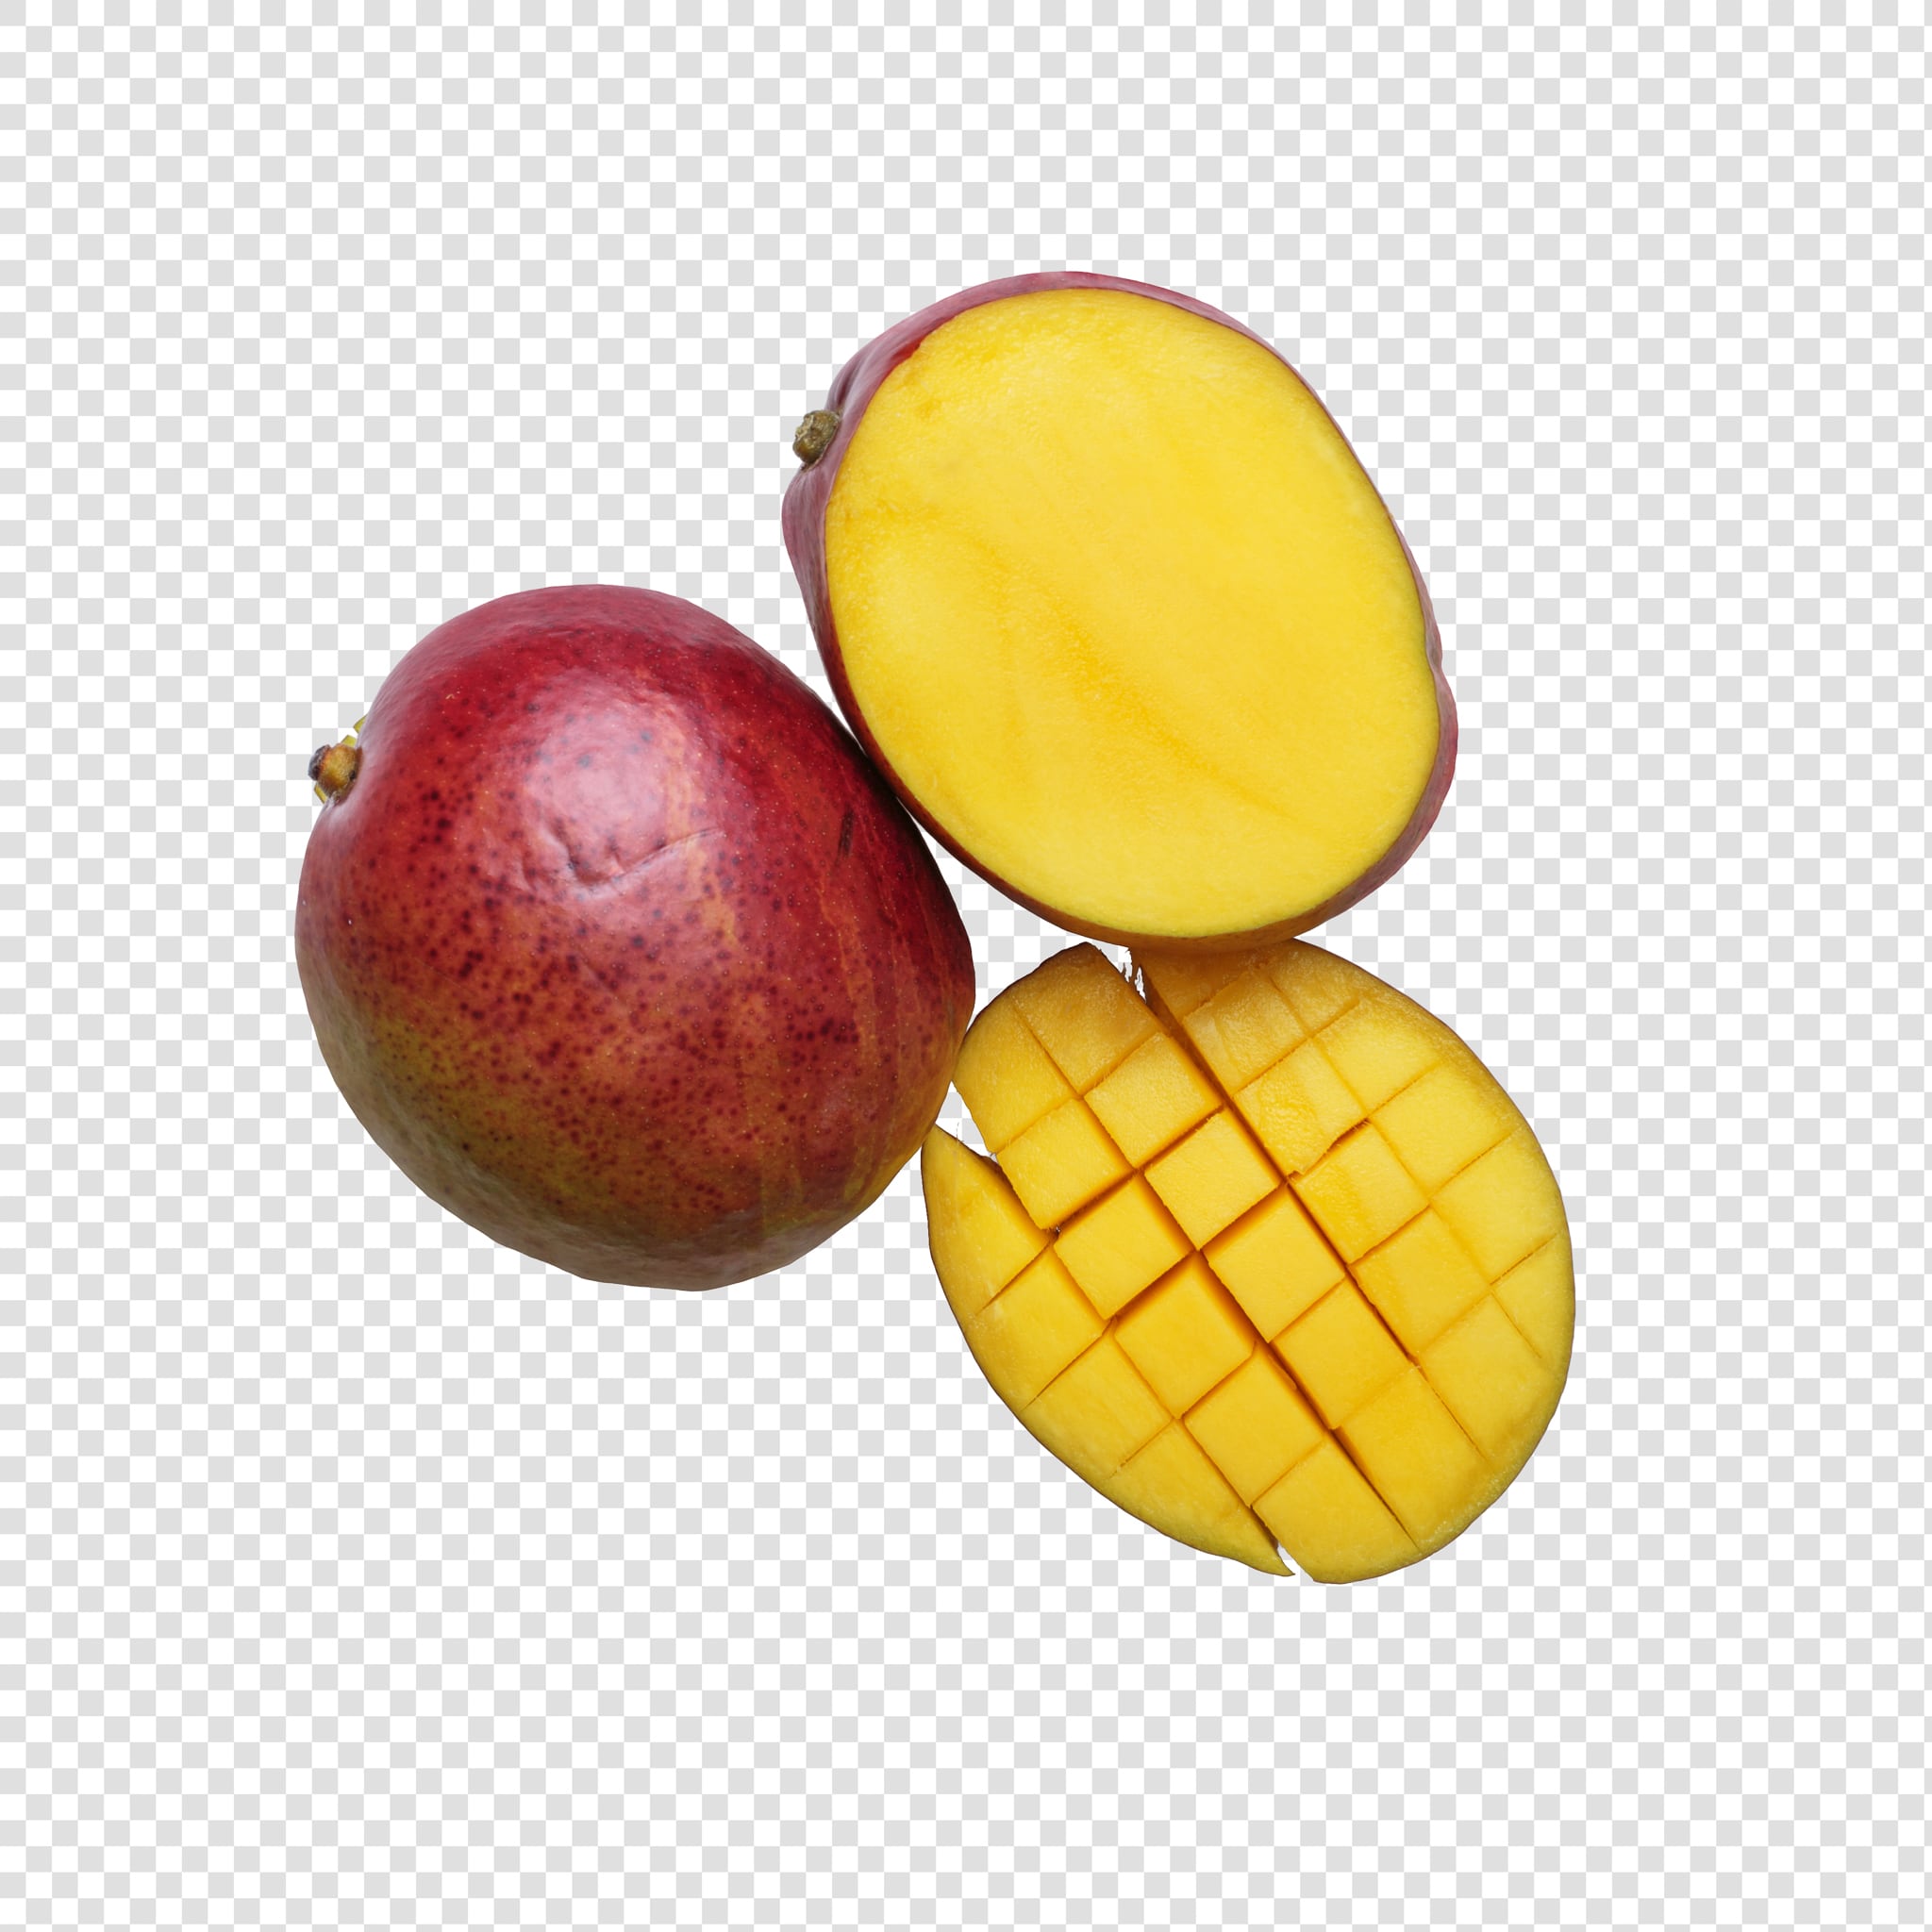 Mango PSD isolated image